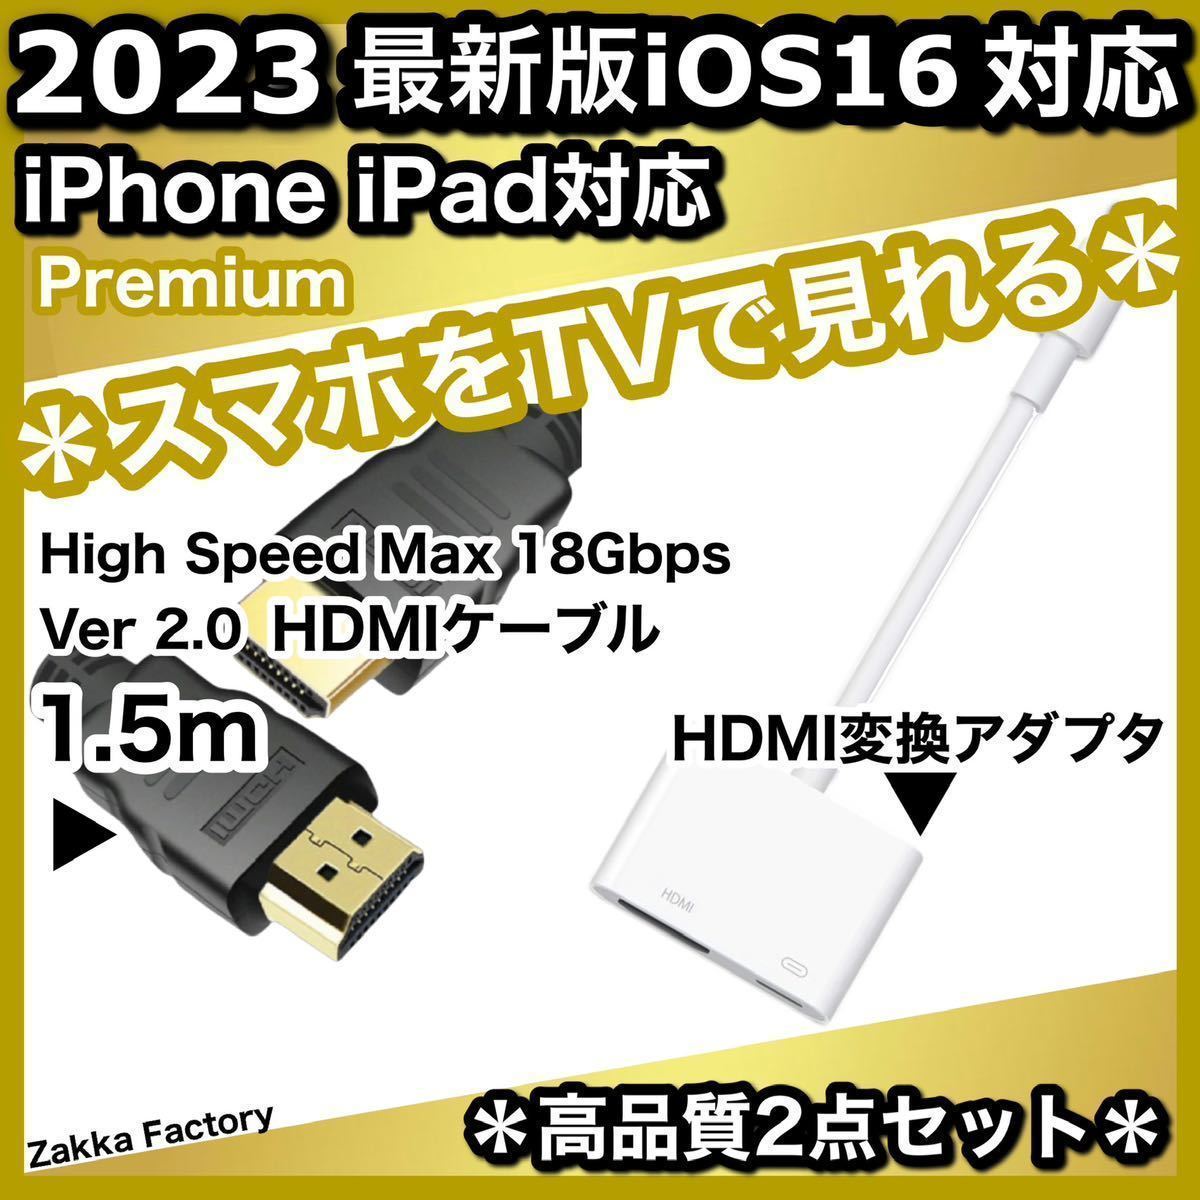 2点 1.5m iPhone iPad HDMI 変換アダプタ ケーブル テレビ スマホ iPhoneテレビ スマホテレビ プロジェクター モニター YouTube TV 接続_画像1